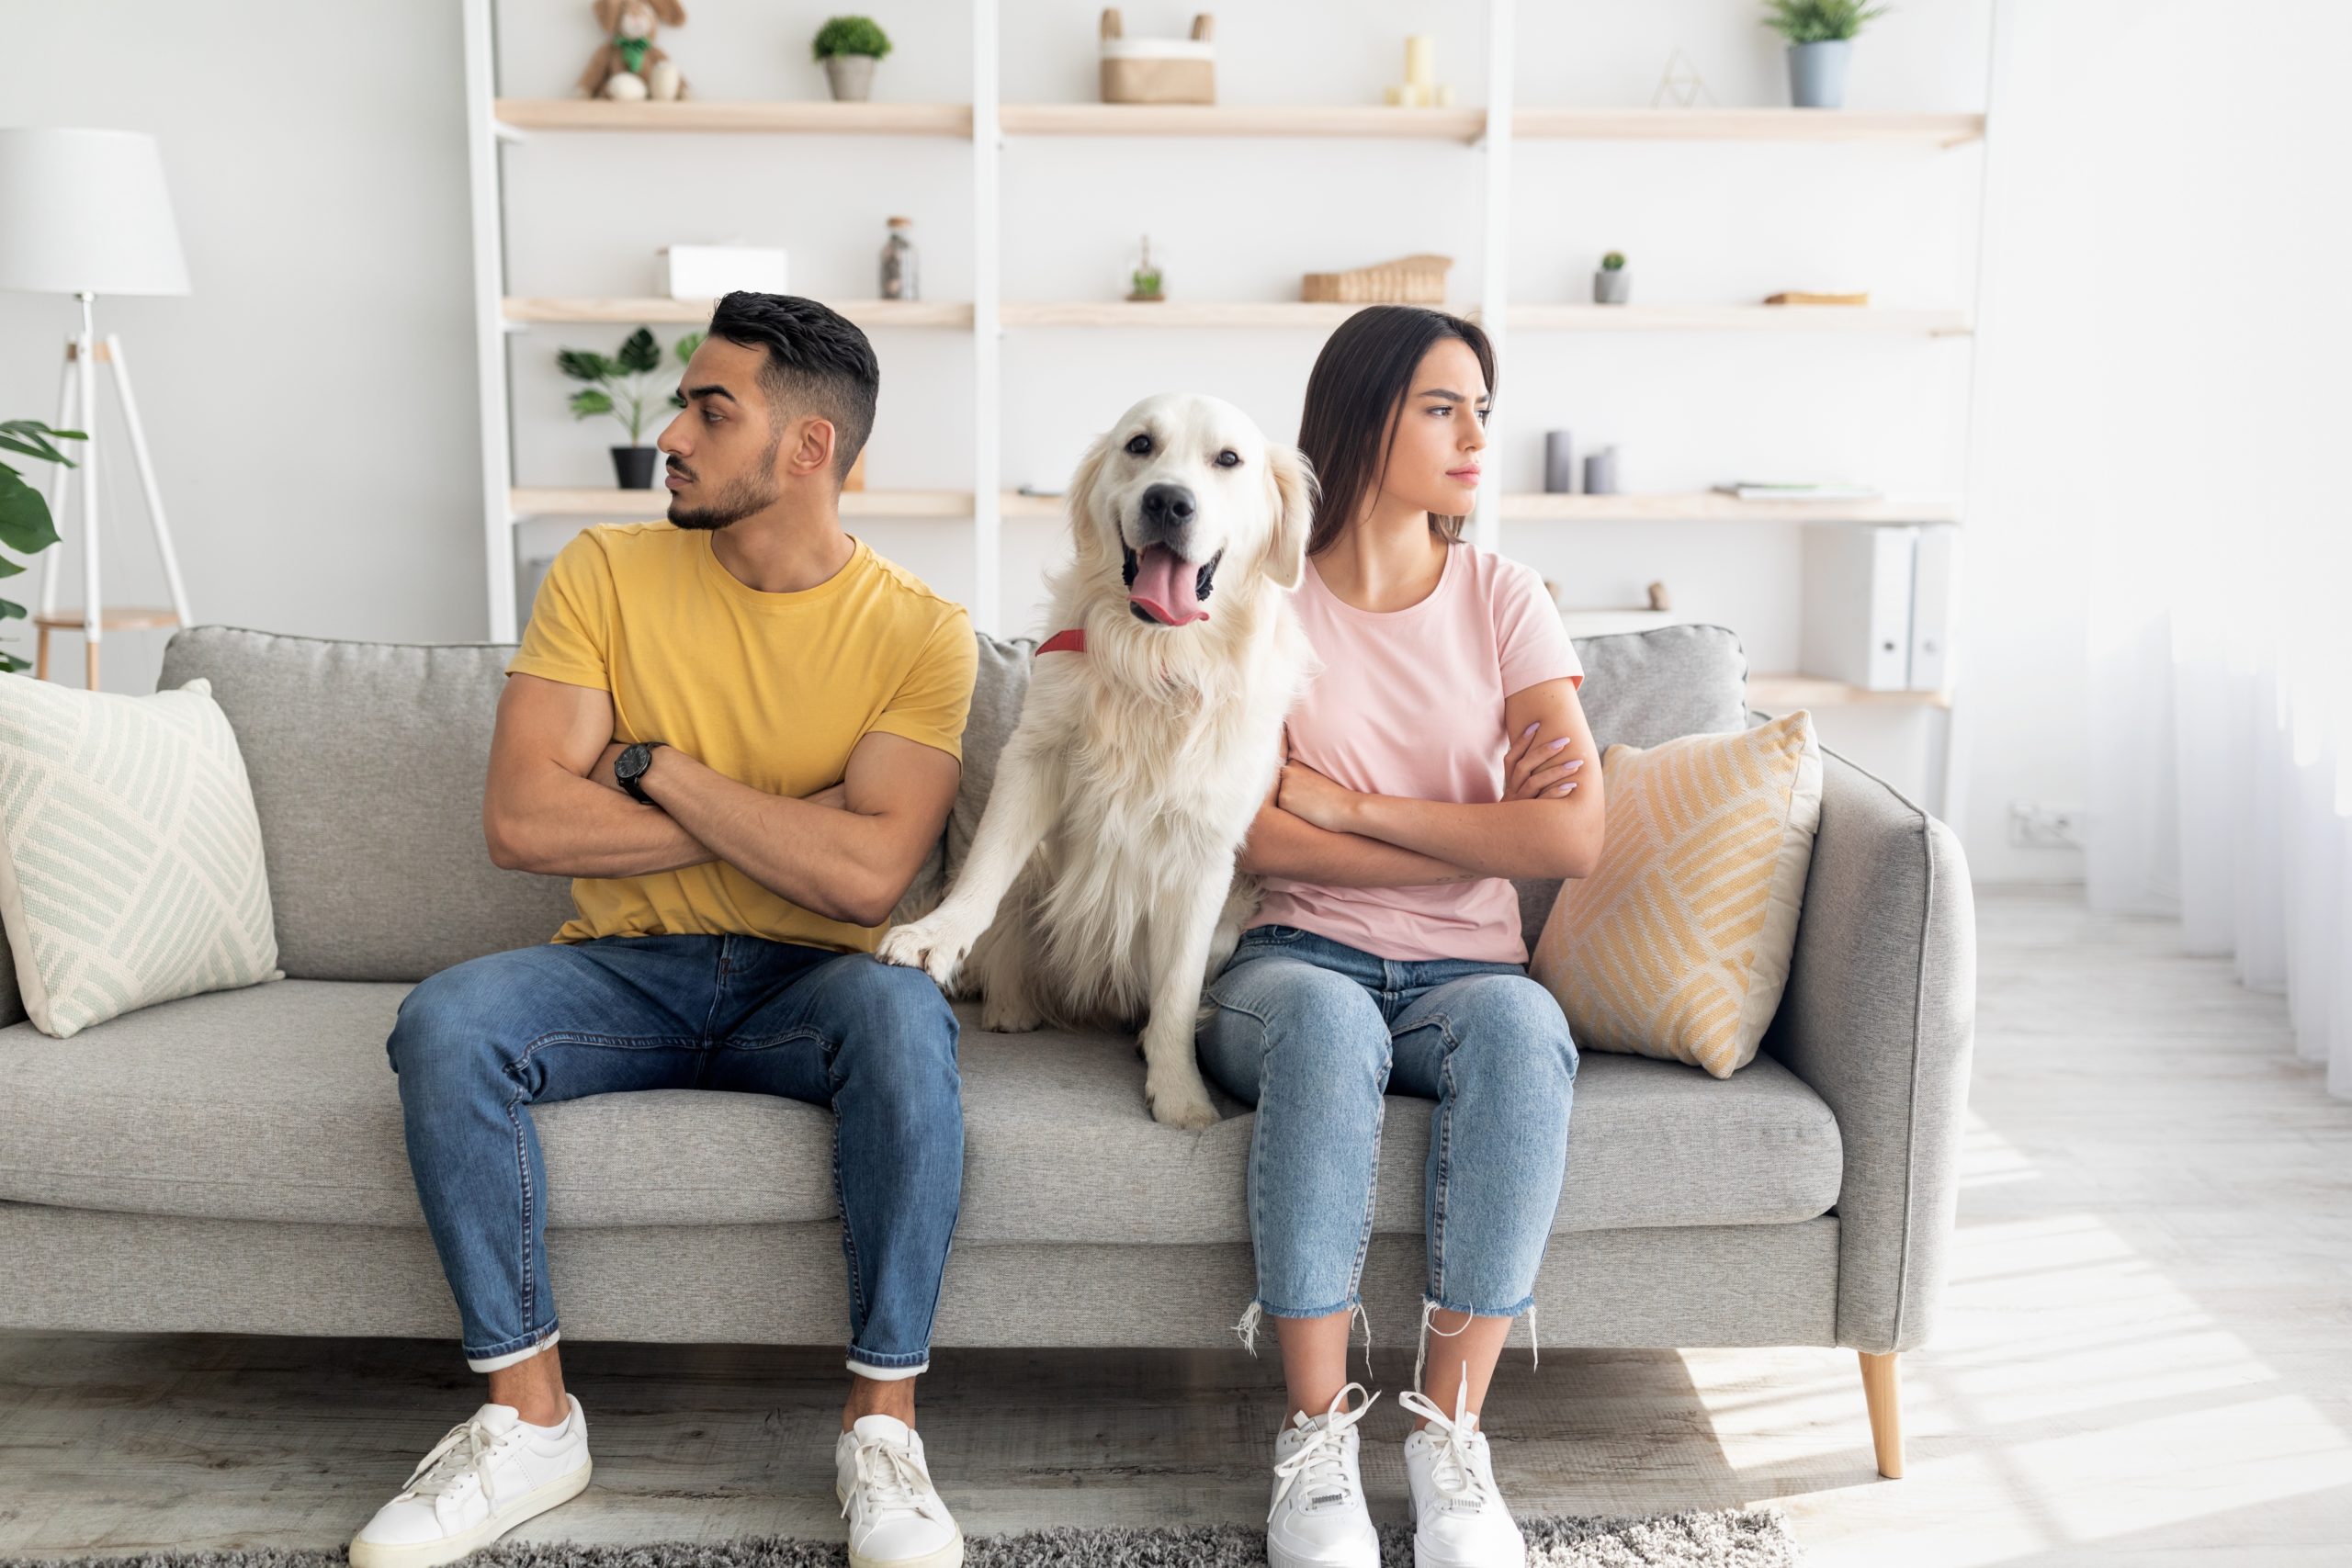 After we’ve divorced, who gets the dog?